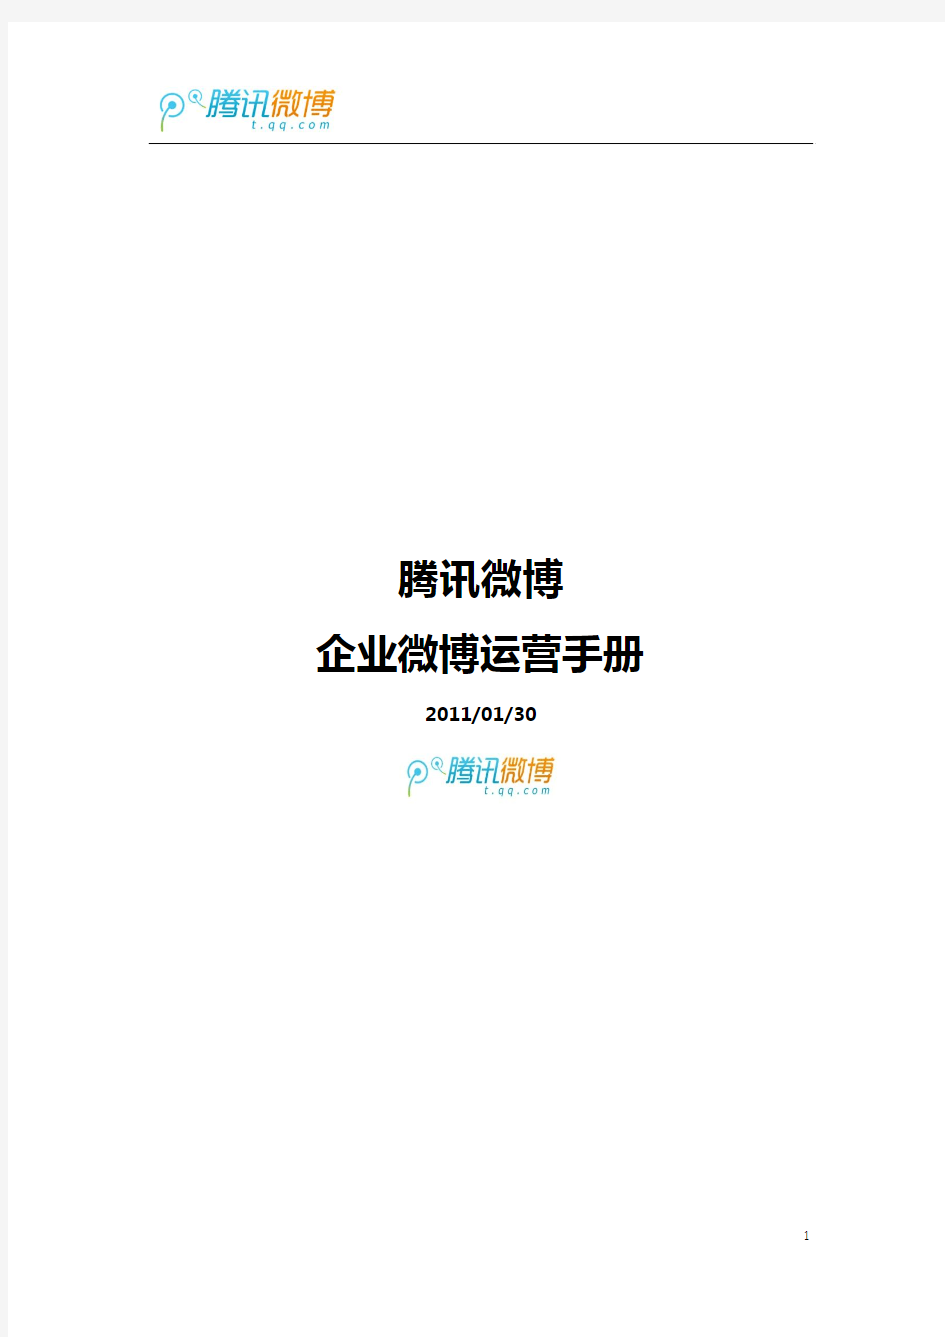 腾讯微博—企业微博2011运营手册(基础版)3.1